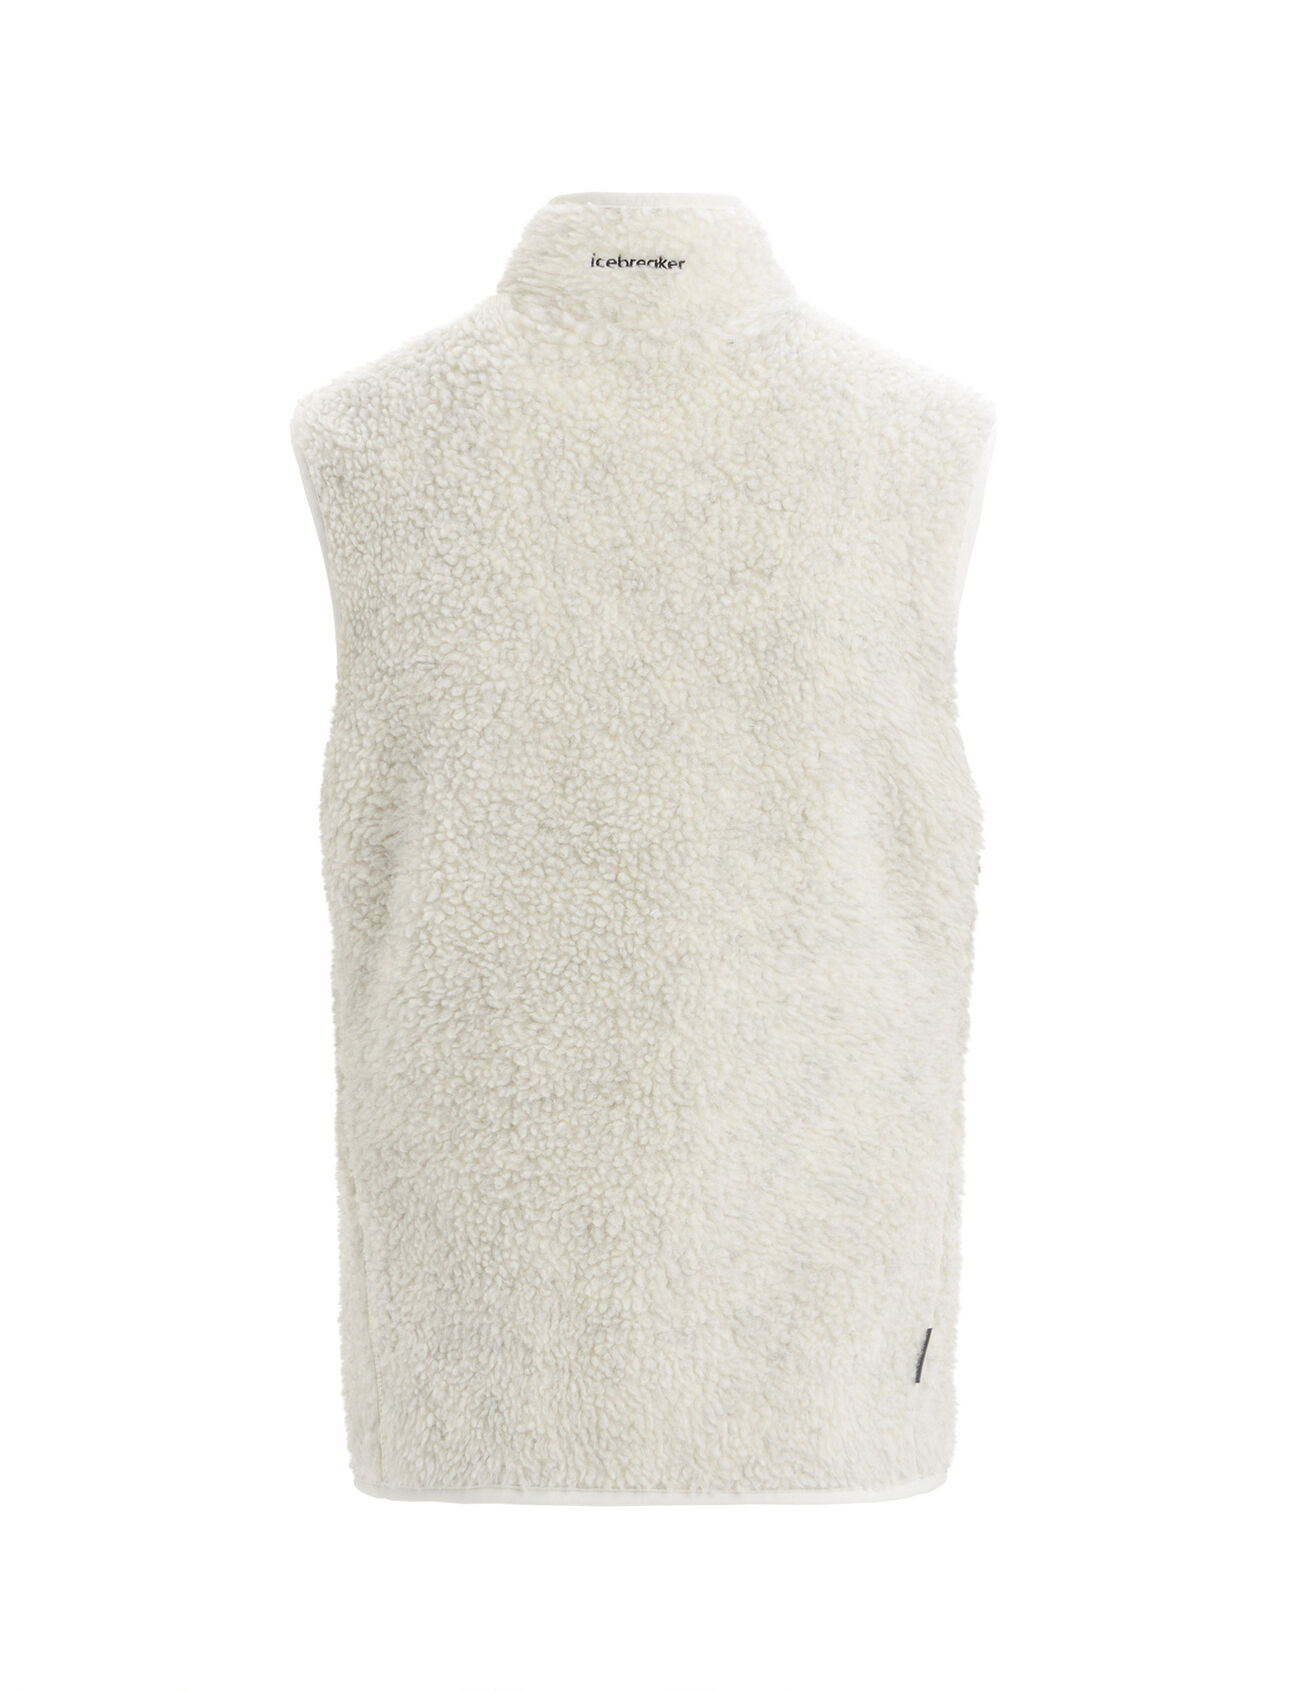 Women's RealFleece™ Merino High Pile Vest